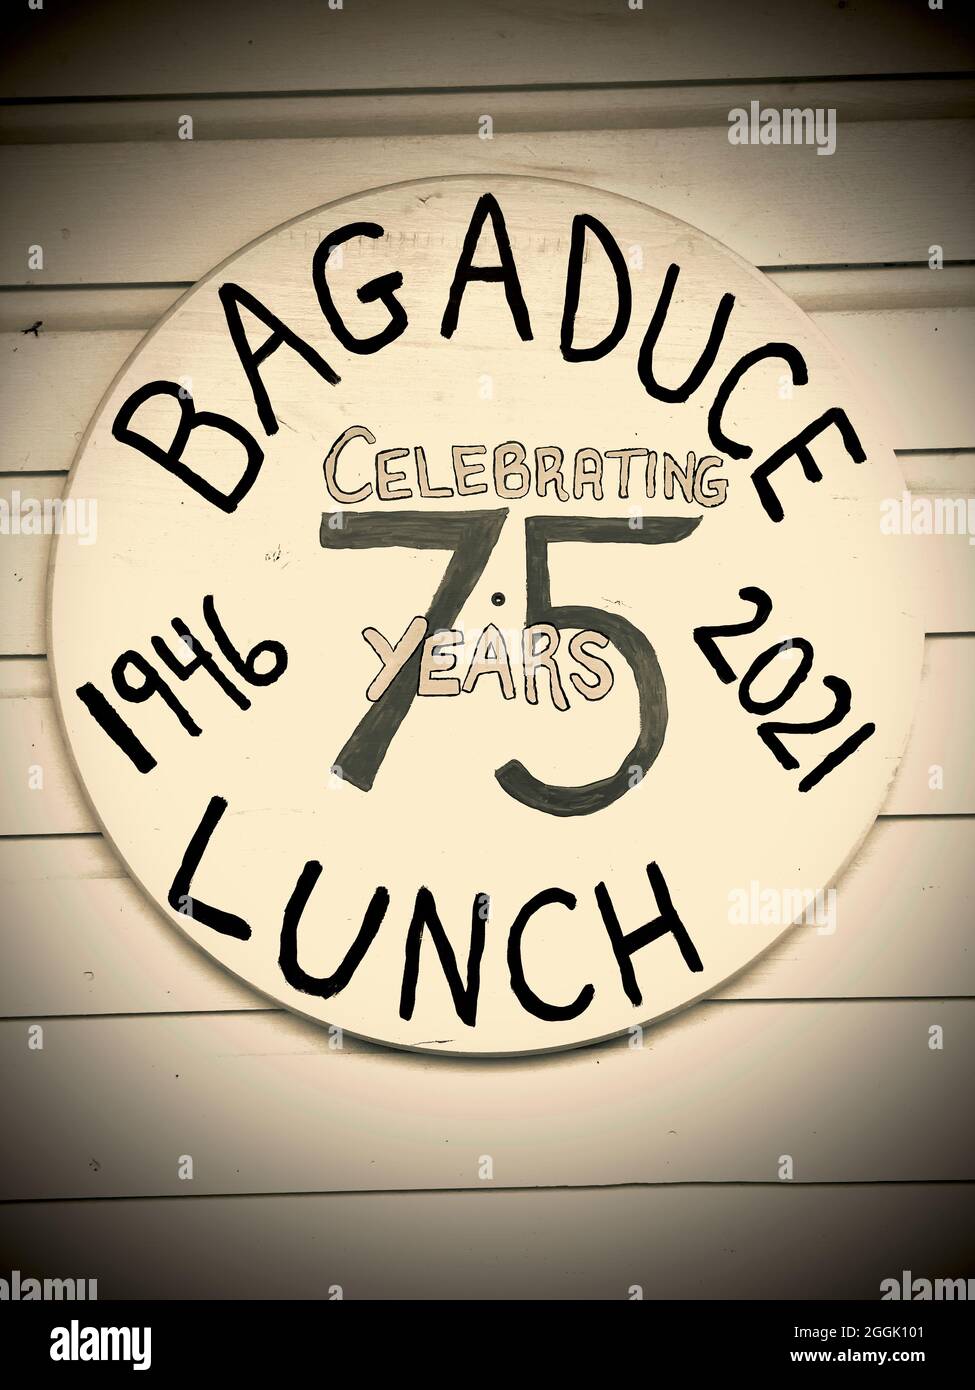 Bagaduce Lunch ist eine Low-Key-Baracke an der Straße, die Hummer- und Seafood-Gerichte anbietet. Es handelt sich um einen saisonalen Betrieb, der 1946 von Vangie und James Peahely gestartet wurde Stockfoto